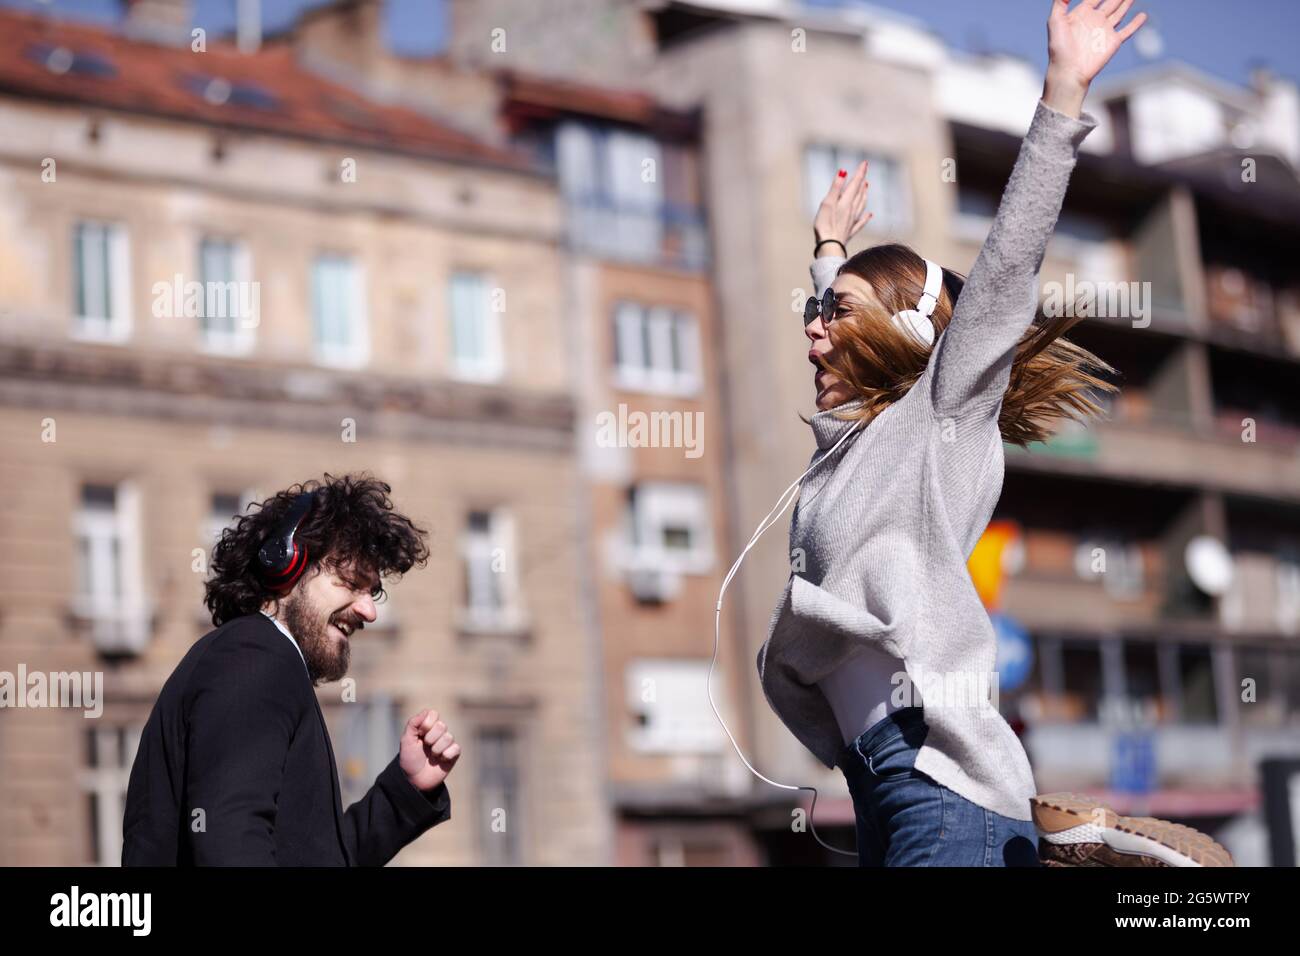 Giovani colleghi di lavoro che ballano insieme con le cuffie dopo il lavoro. Amici felici che saltano e si ingannano all'aperto. Foto Stock